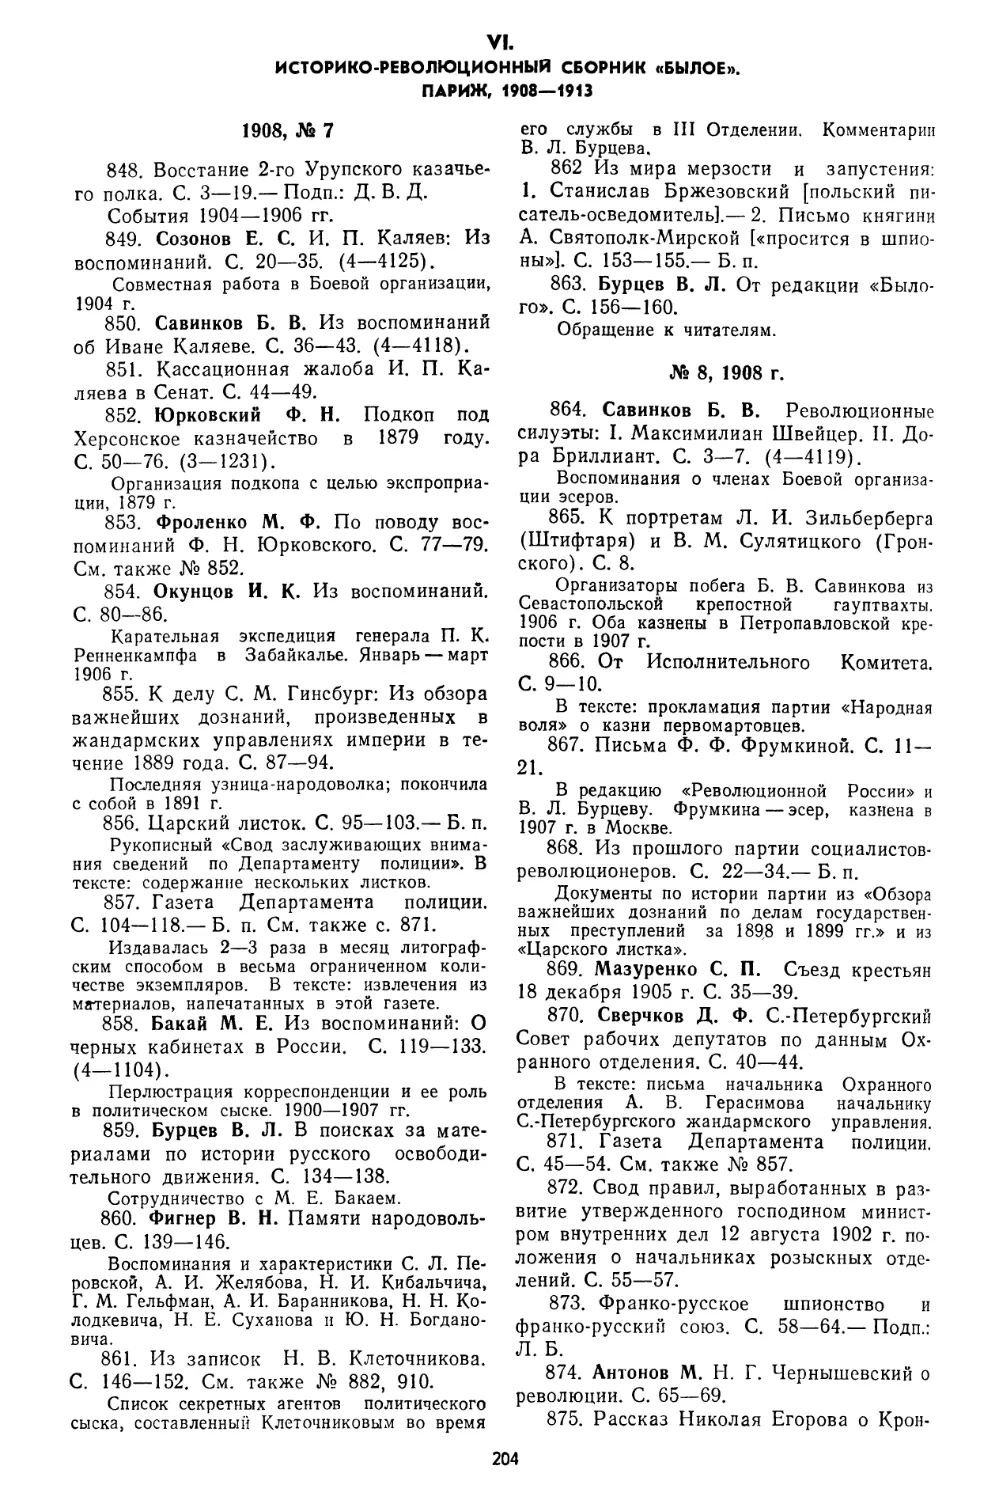 VI. Историко-революционный сборник «Былое». Париж, 1908—1913, №848—959